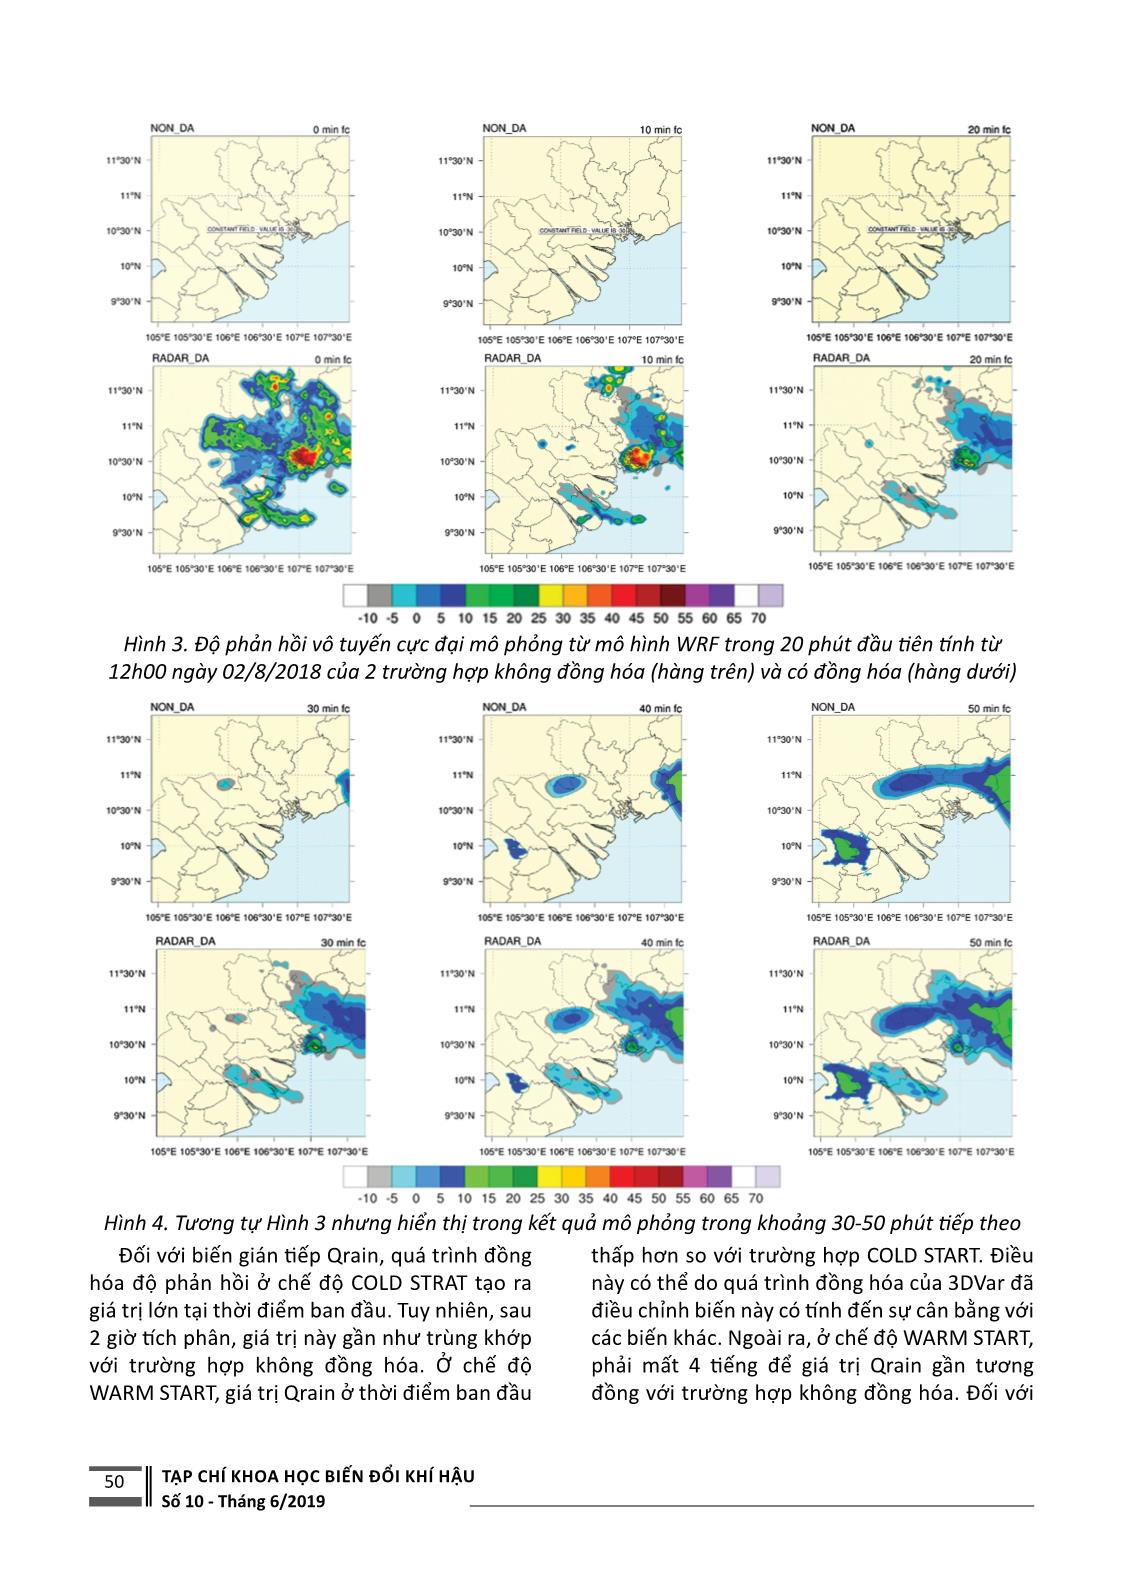 Ứng dụng đồng hóa số liệu radar dự báo mưa lớn tại khu vực thành phố Hồ Chí Minh trang 4